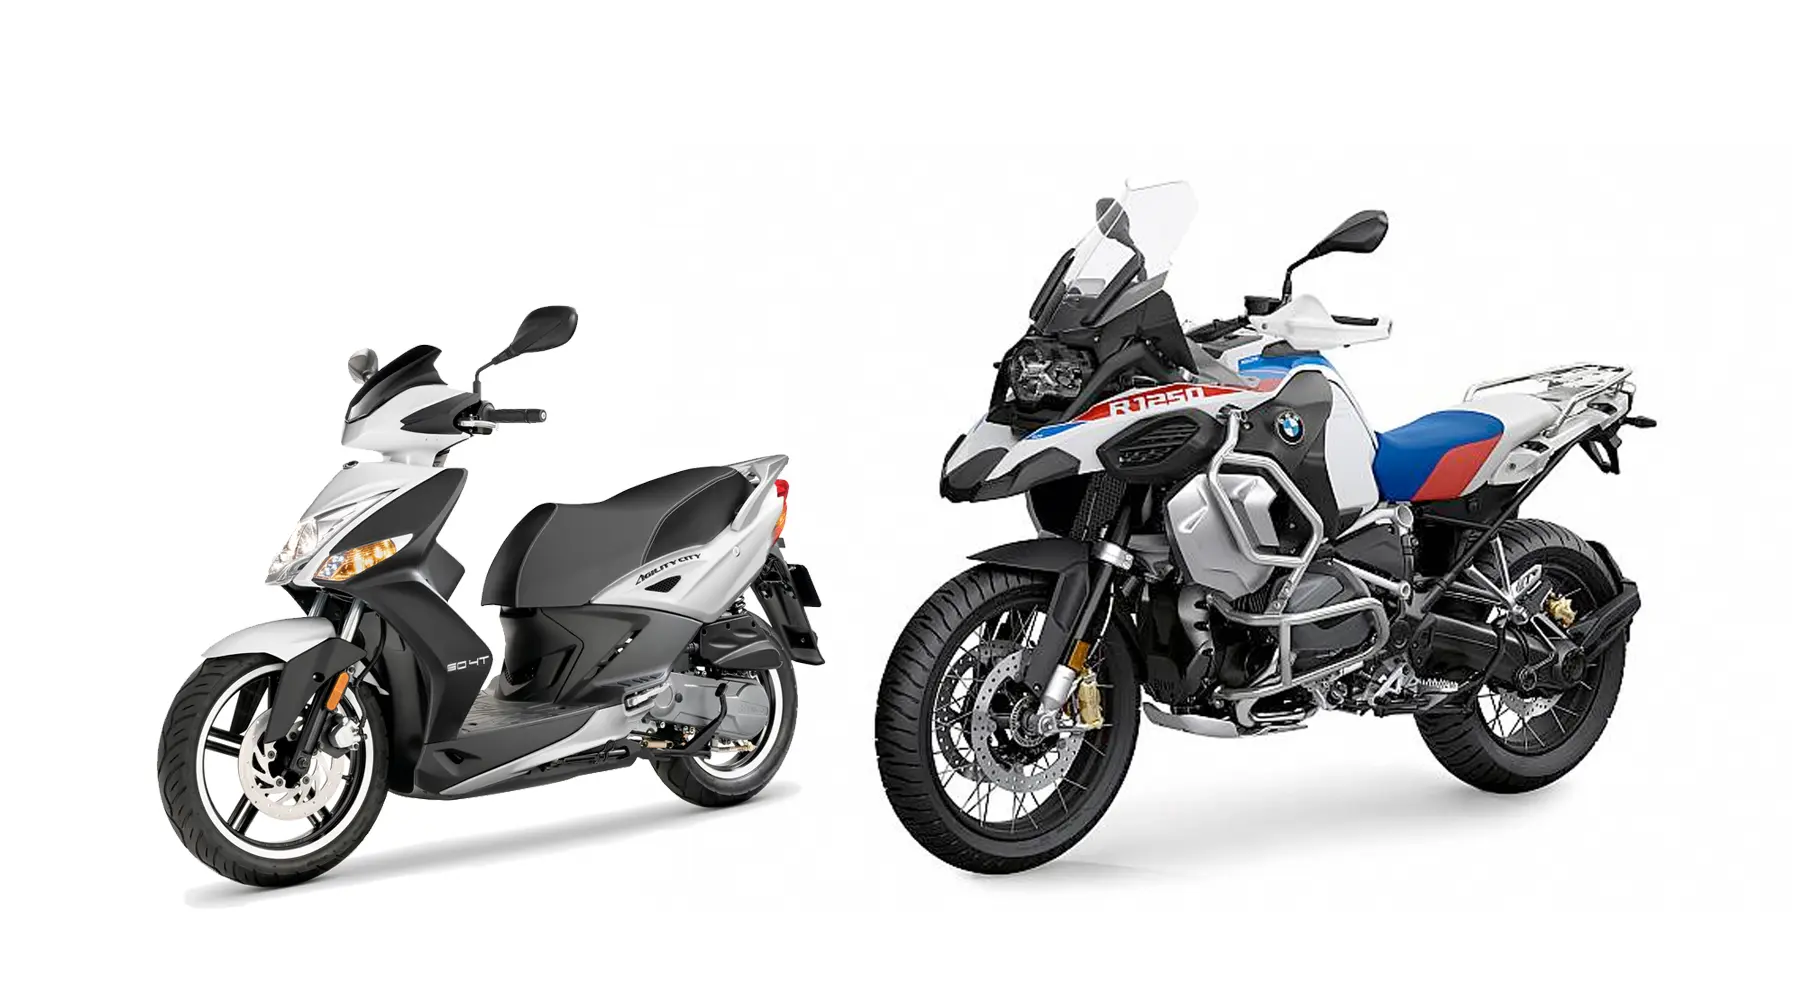 diferencias entre ciclomotor y motocicleta - Cuál es la diferencia entre un ciclomotor y una motocicleta